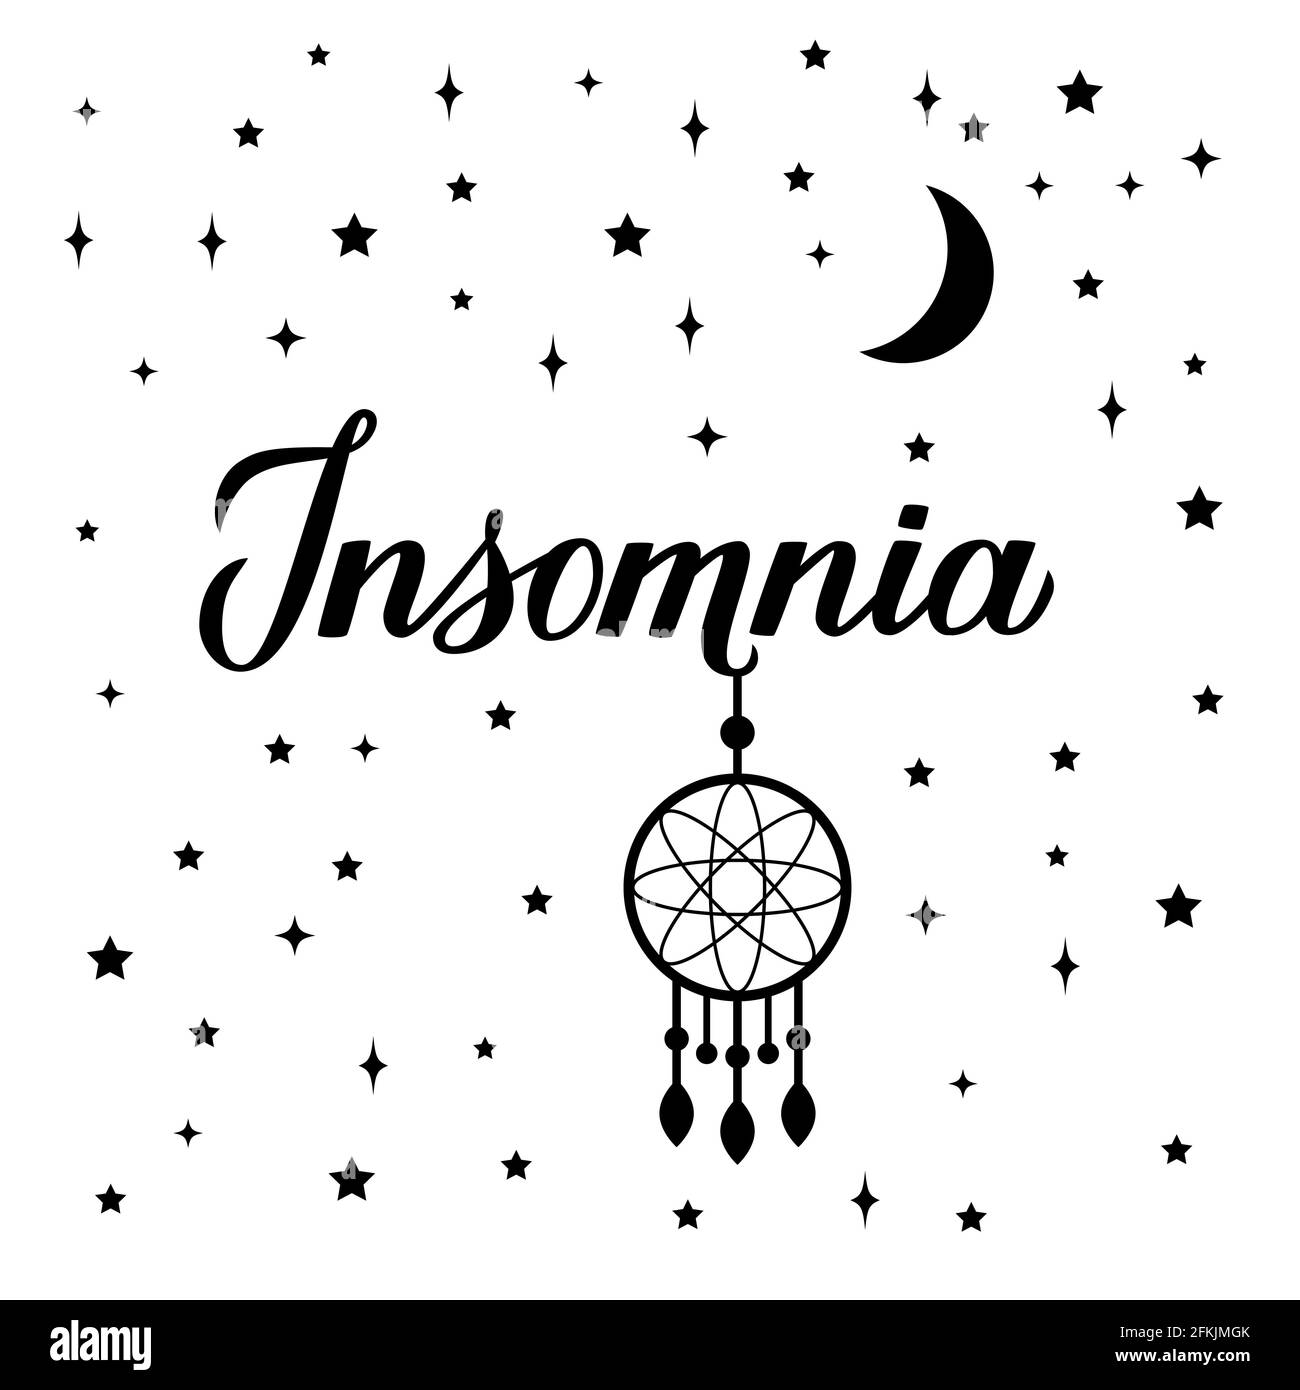 Insomnia Kalligraphie Handschriftzug isoliert auf weiß. Traumfänger, Mond und Sterne. Schlafprobleme und Schlaflosigkeit Konzept Typografie Poster. Vecto Stock Vektor